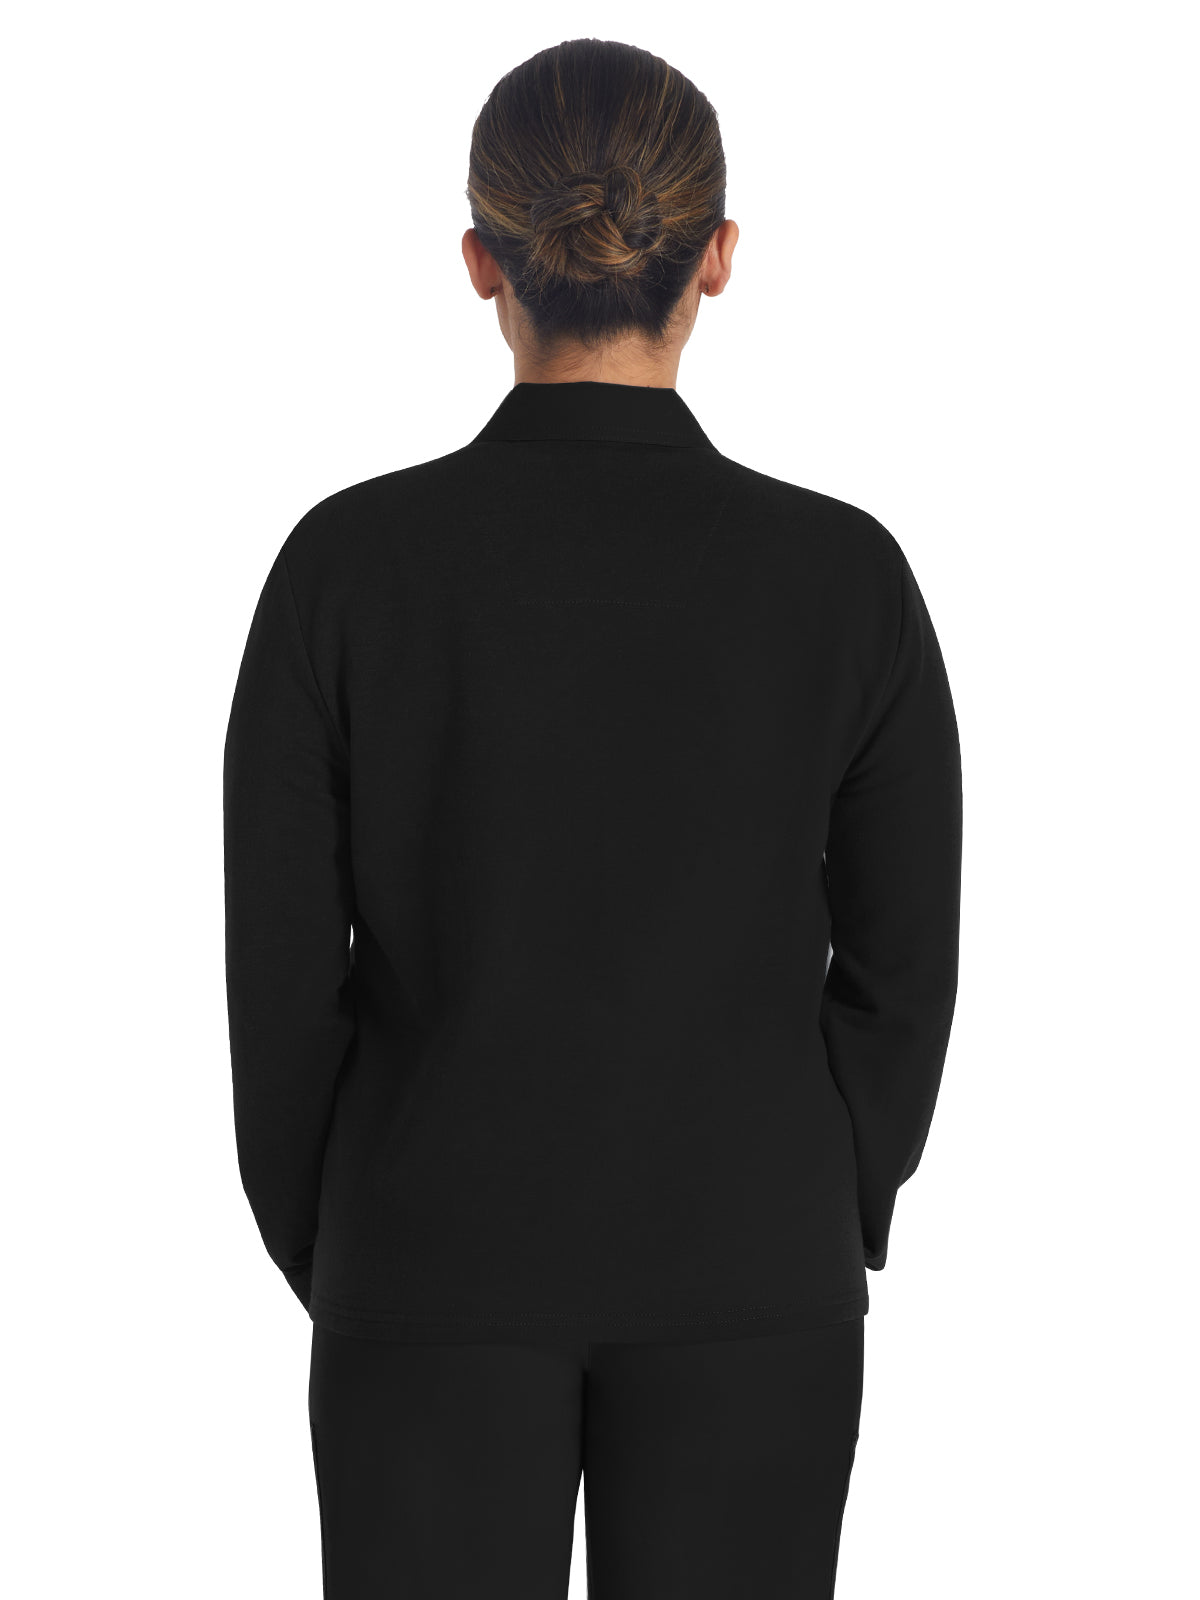 Women's 3-Pocket Zip Front Fleece Jacket - DK319 - Black